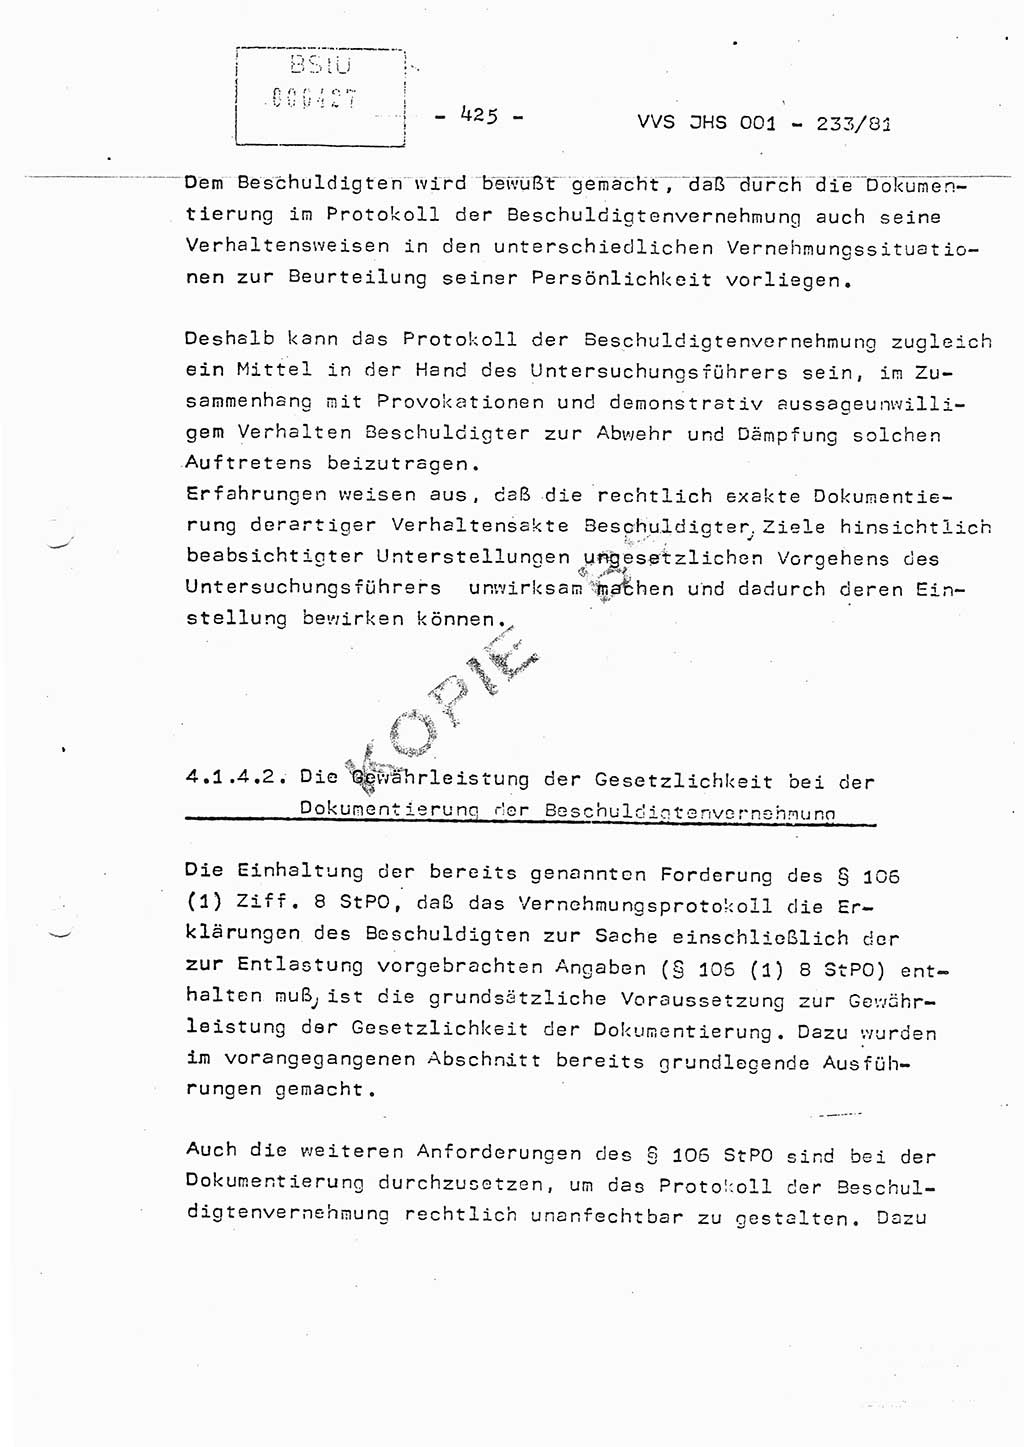 Dissertation Oberstleutnant Horst Zank (JHS), Oberstleutnant Dr. Karl-Heinz Knoblauch (JHS), Oberstleutnant Gustav-Adolf Kowalewski (HA Ⅸ), Oberstleutnant Wolfgang Plötner (HA Ⅸ), Ministerium für Staatssicherheit (MfS) [Deutsche Demokratische Republik (DDR)], Juristische Hochschule (JHS), Vertrauliche Verschlußsache (VVS) o001-233/81, Potsdam 1981, Blatt 425 (Diss. MfS DDR JHS VVS o001-233/81 1981, Bl. 425)